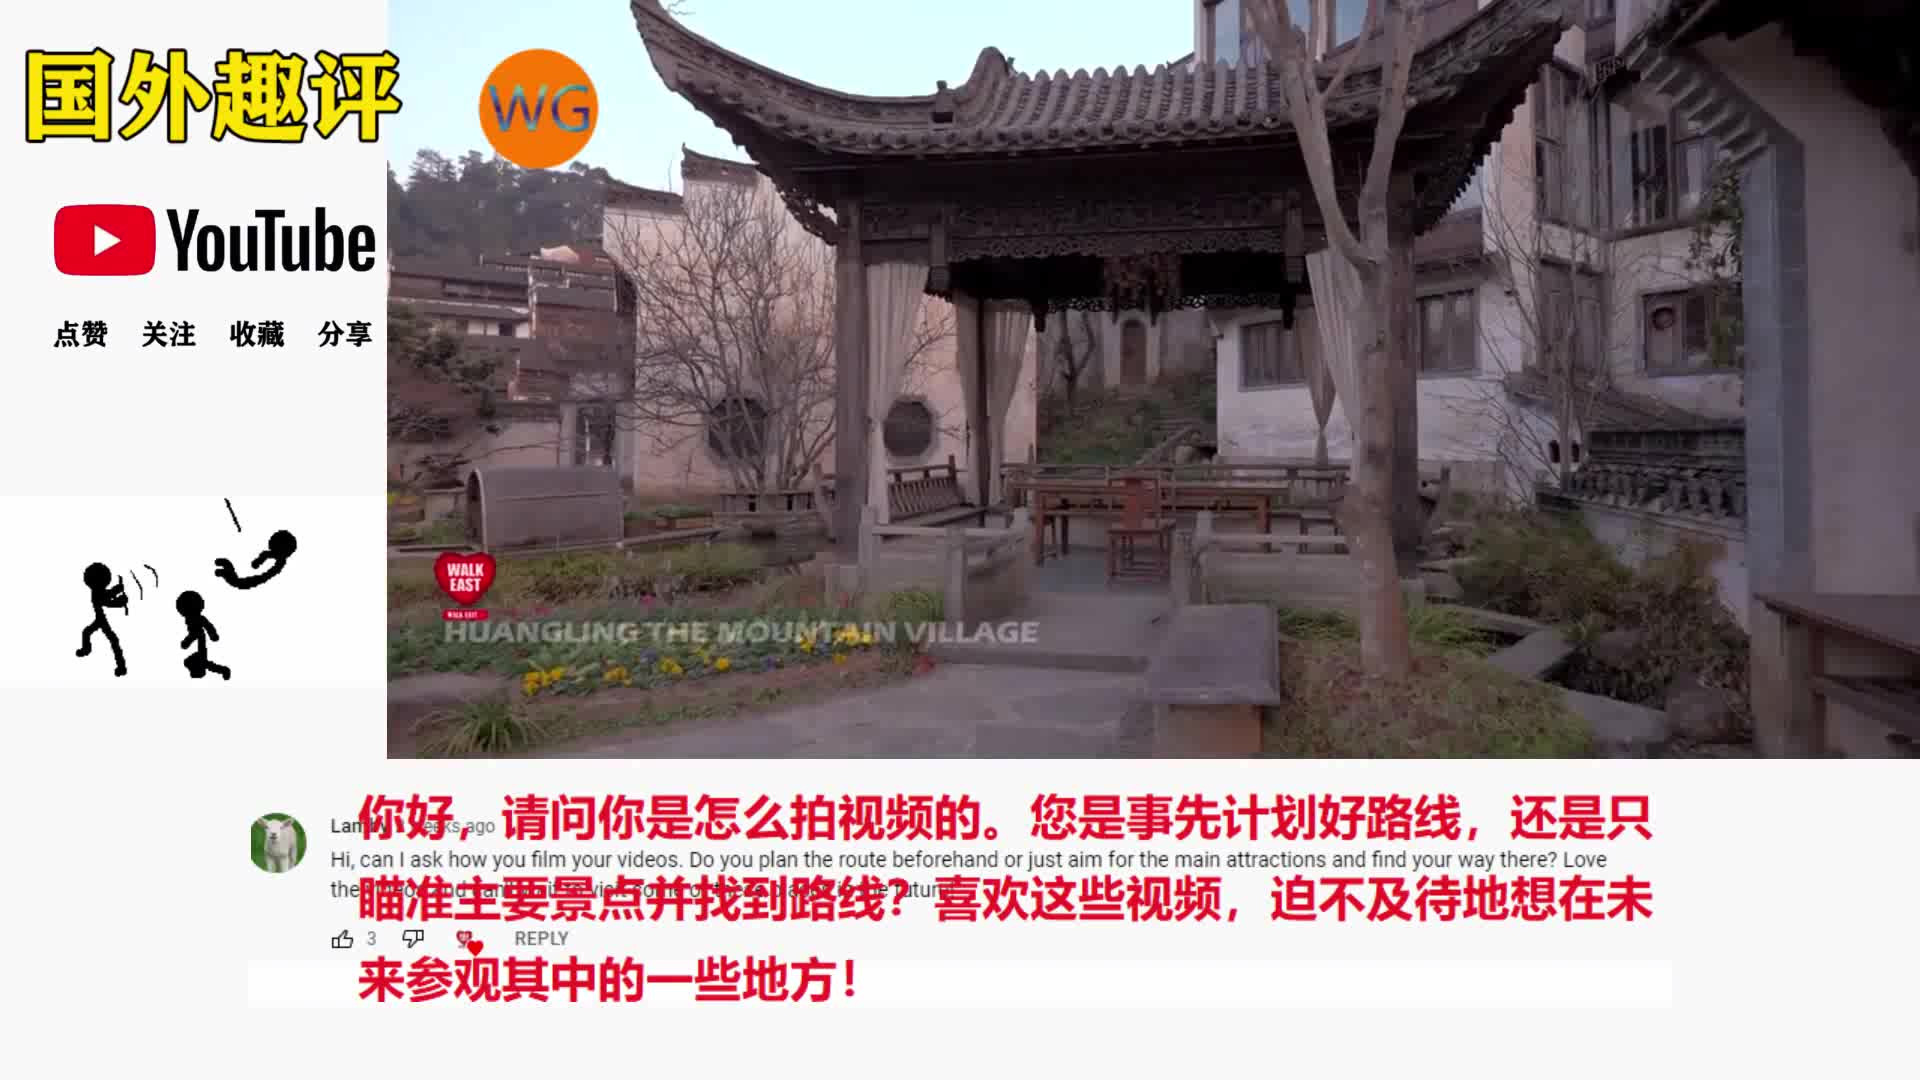 歪果仁看中国：中国农村的徒步街拍对老外的冲击力很大，纷纷想来中国旅游